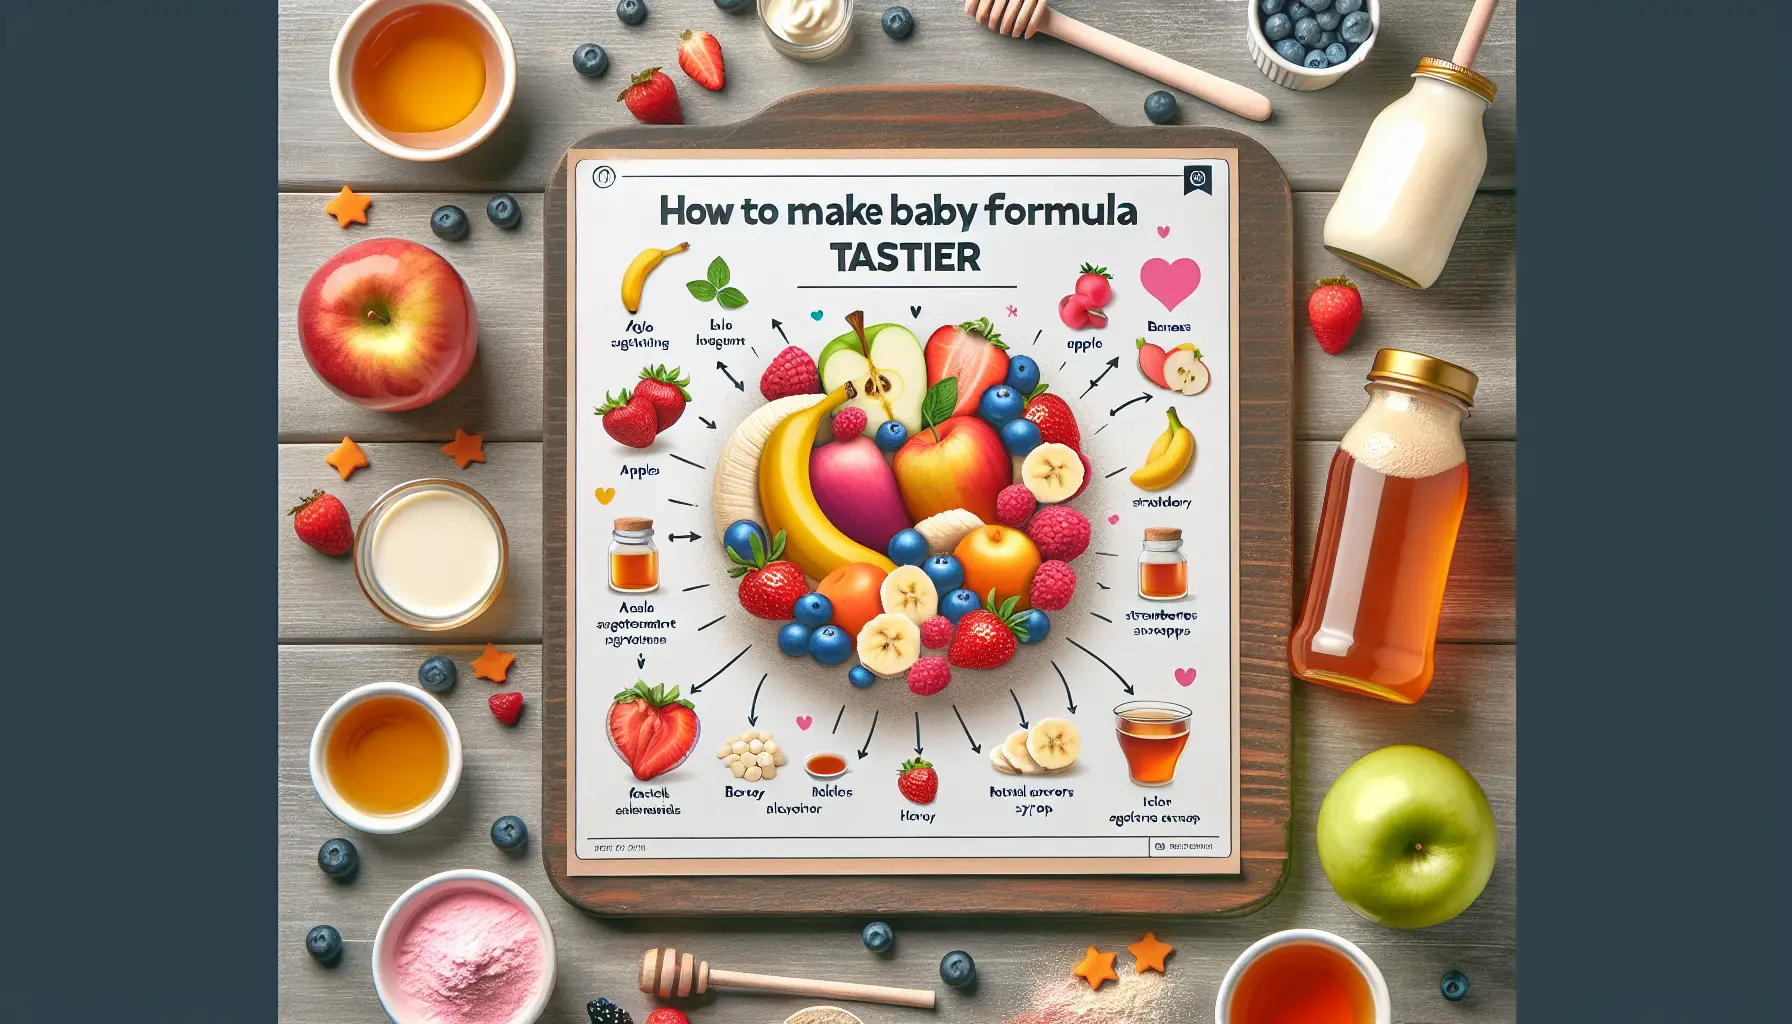 How To Make Baby Formula Taste Better